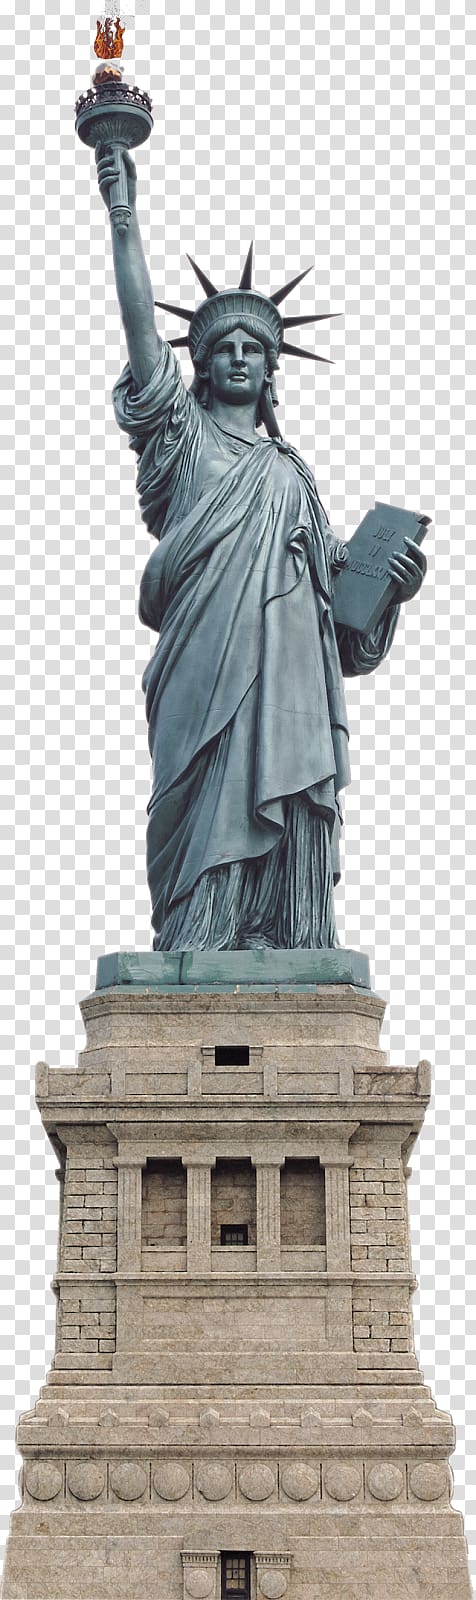 Statue of Liberty Monument Sculpture , Paris london transparent background PNG clipart